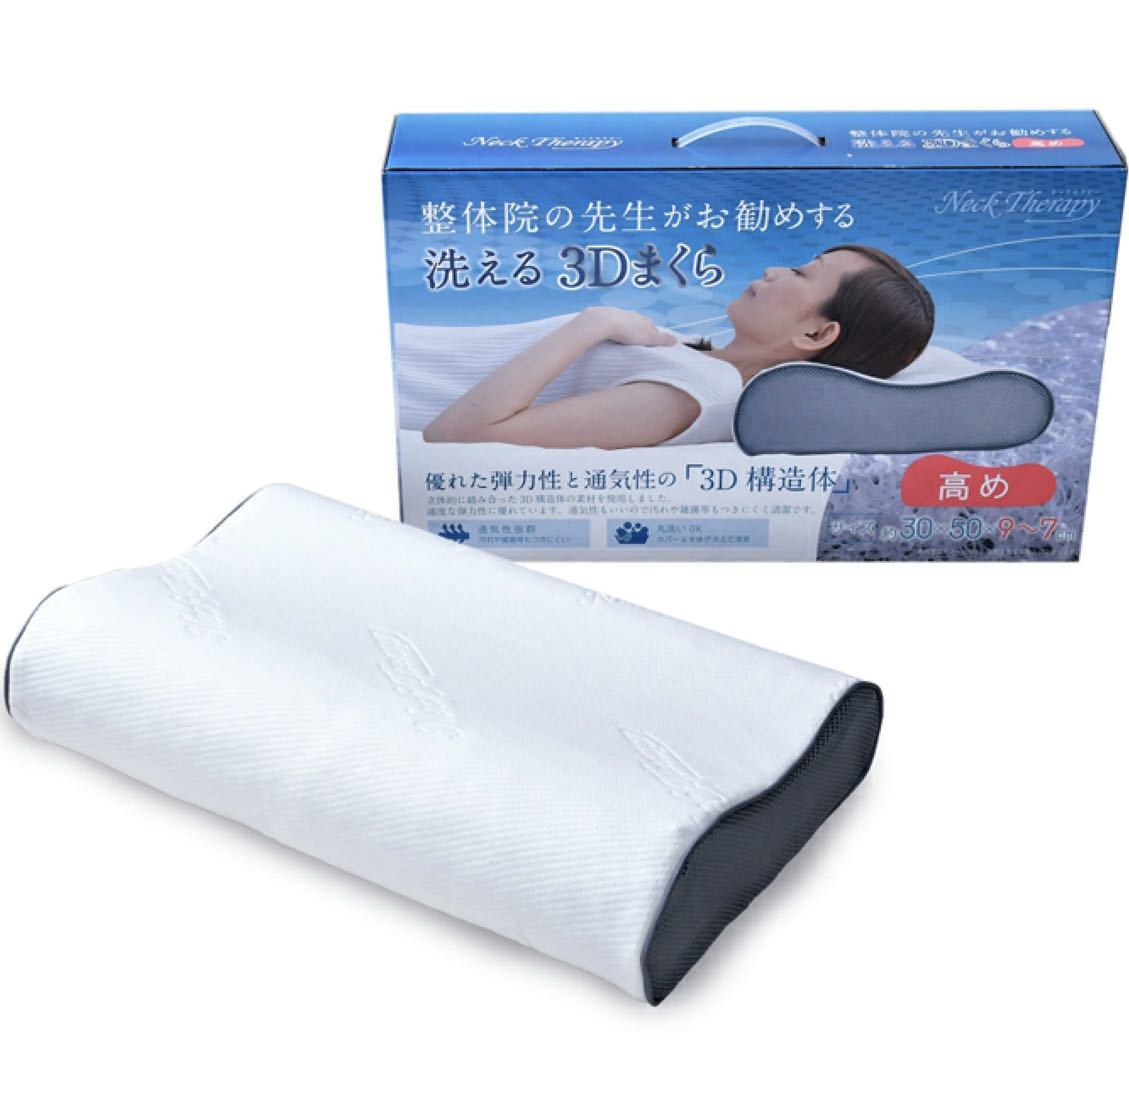  новый товар! целый body .. . сырой . рекомендация делать 3D подушка повышать (30×50×9cm)... подушка 